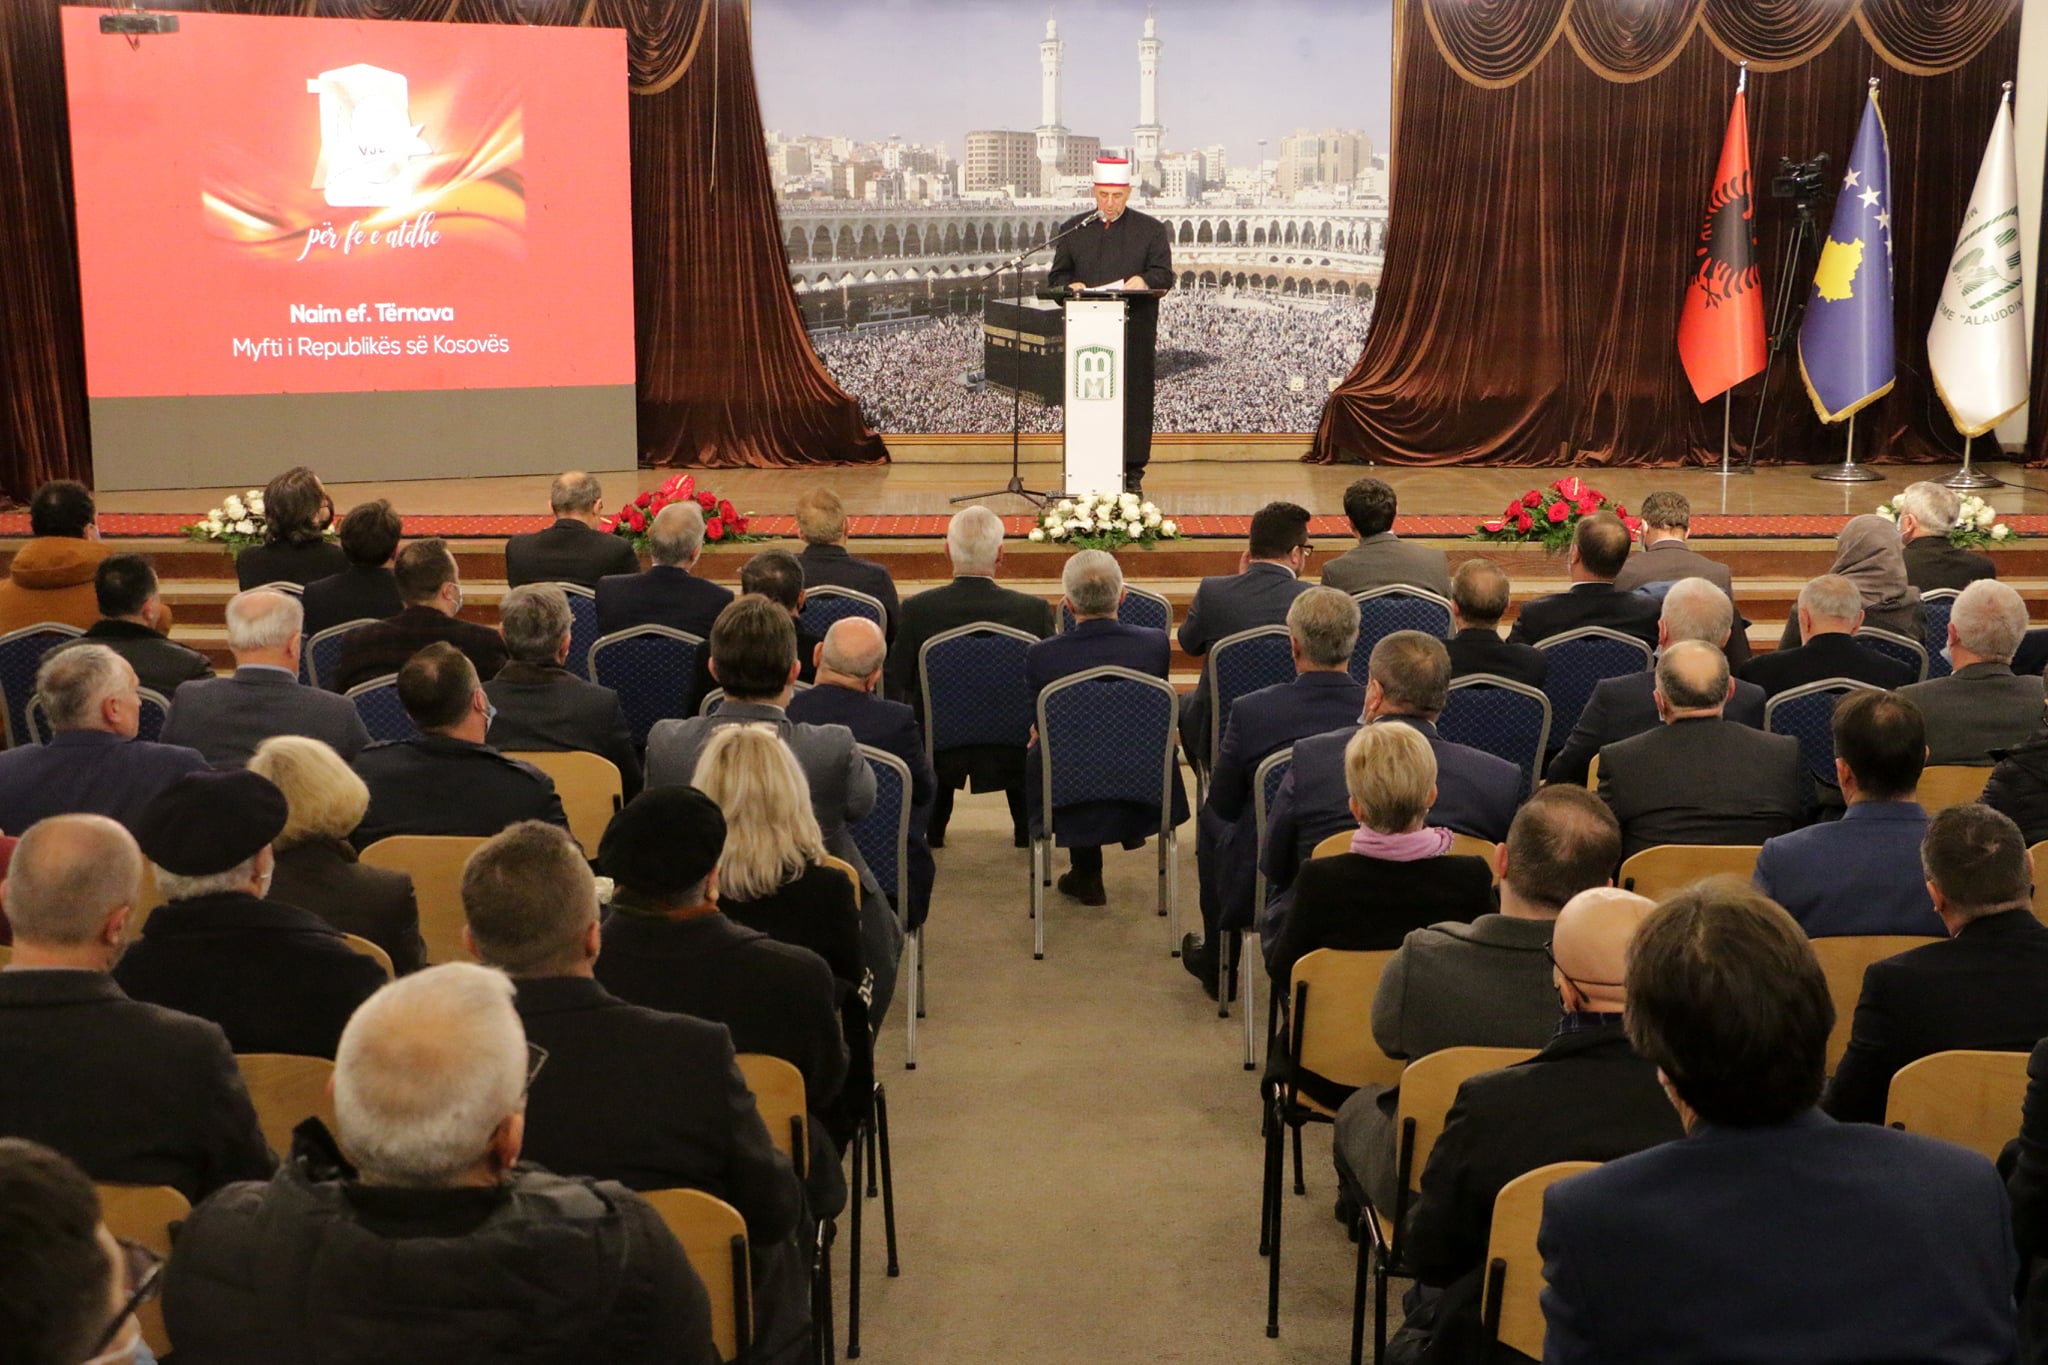 المشيخة الإسلامية تحتفل بالذكرى السبعين لمدرسة علاء الدين الثانوية الإسلامية التابعة للمشيخة الإسلامية في العاصمة الكوسوفية بريشتينا